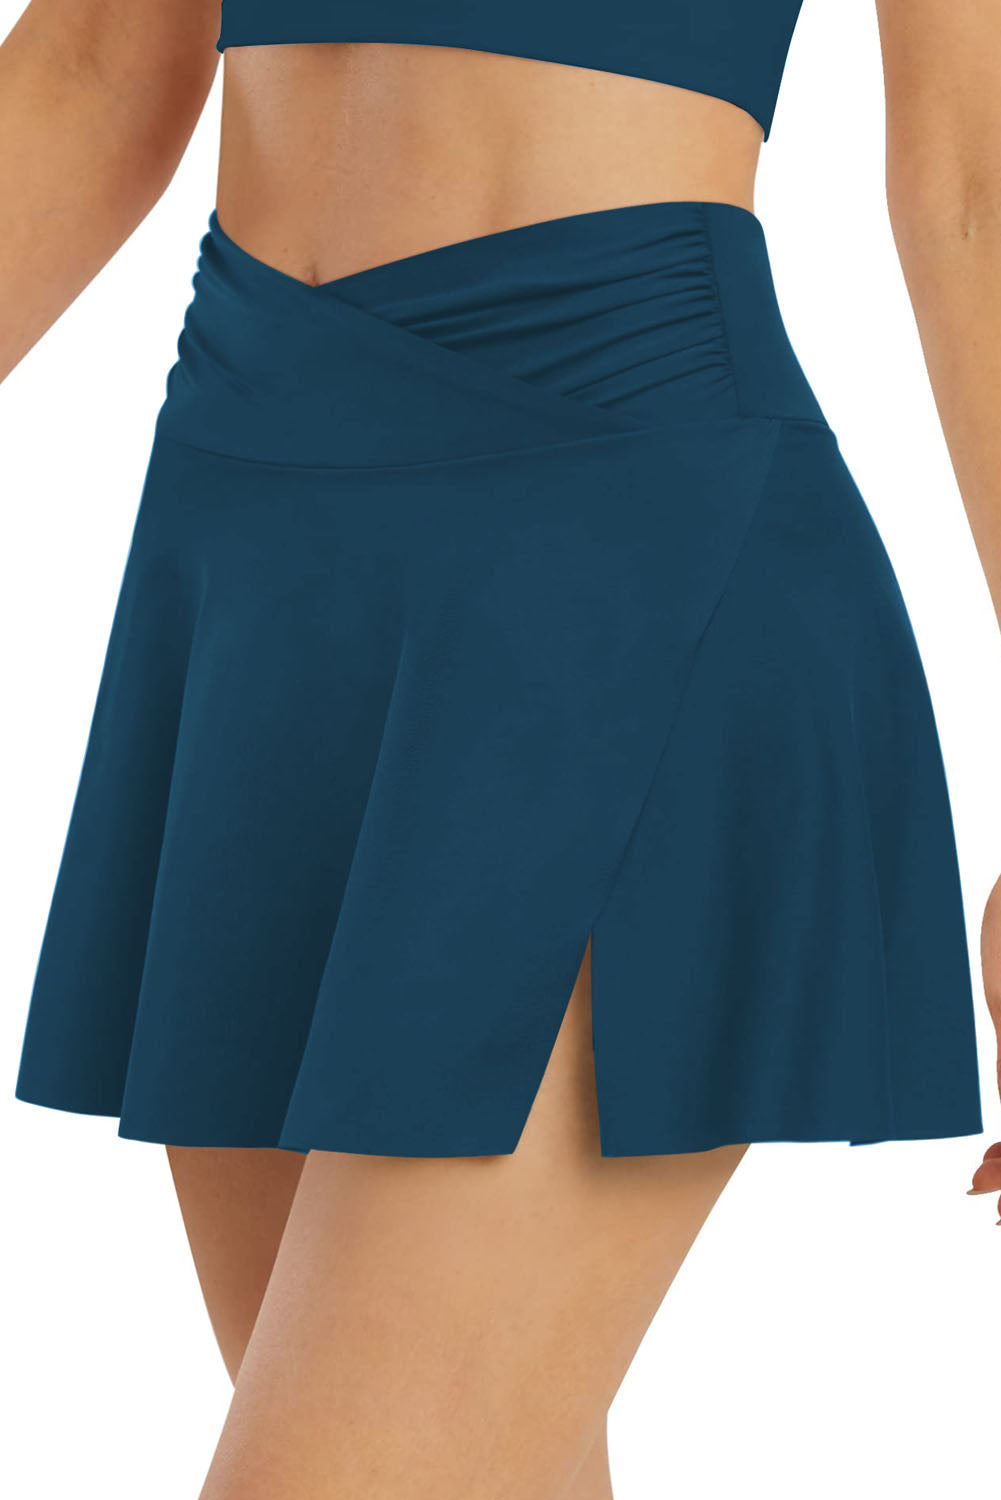 LC472305-105-S, LC472305-105-M, LC472305-105-L, LC472305-105-XL, LC472305-105-2XL, Blue Women's High Waisted Swim Skirt Flared Swim Skirt